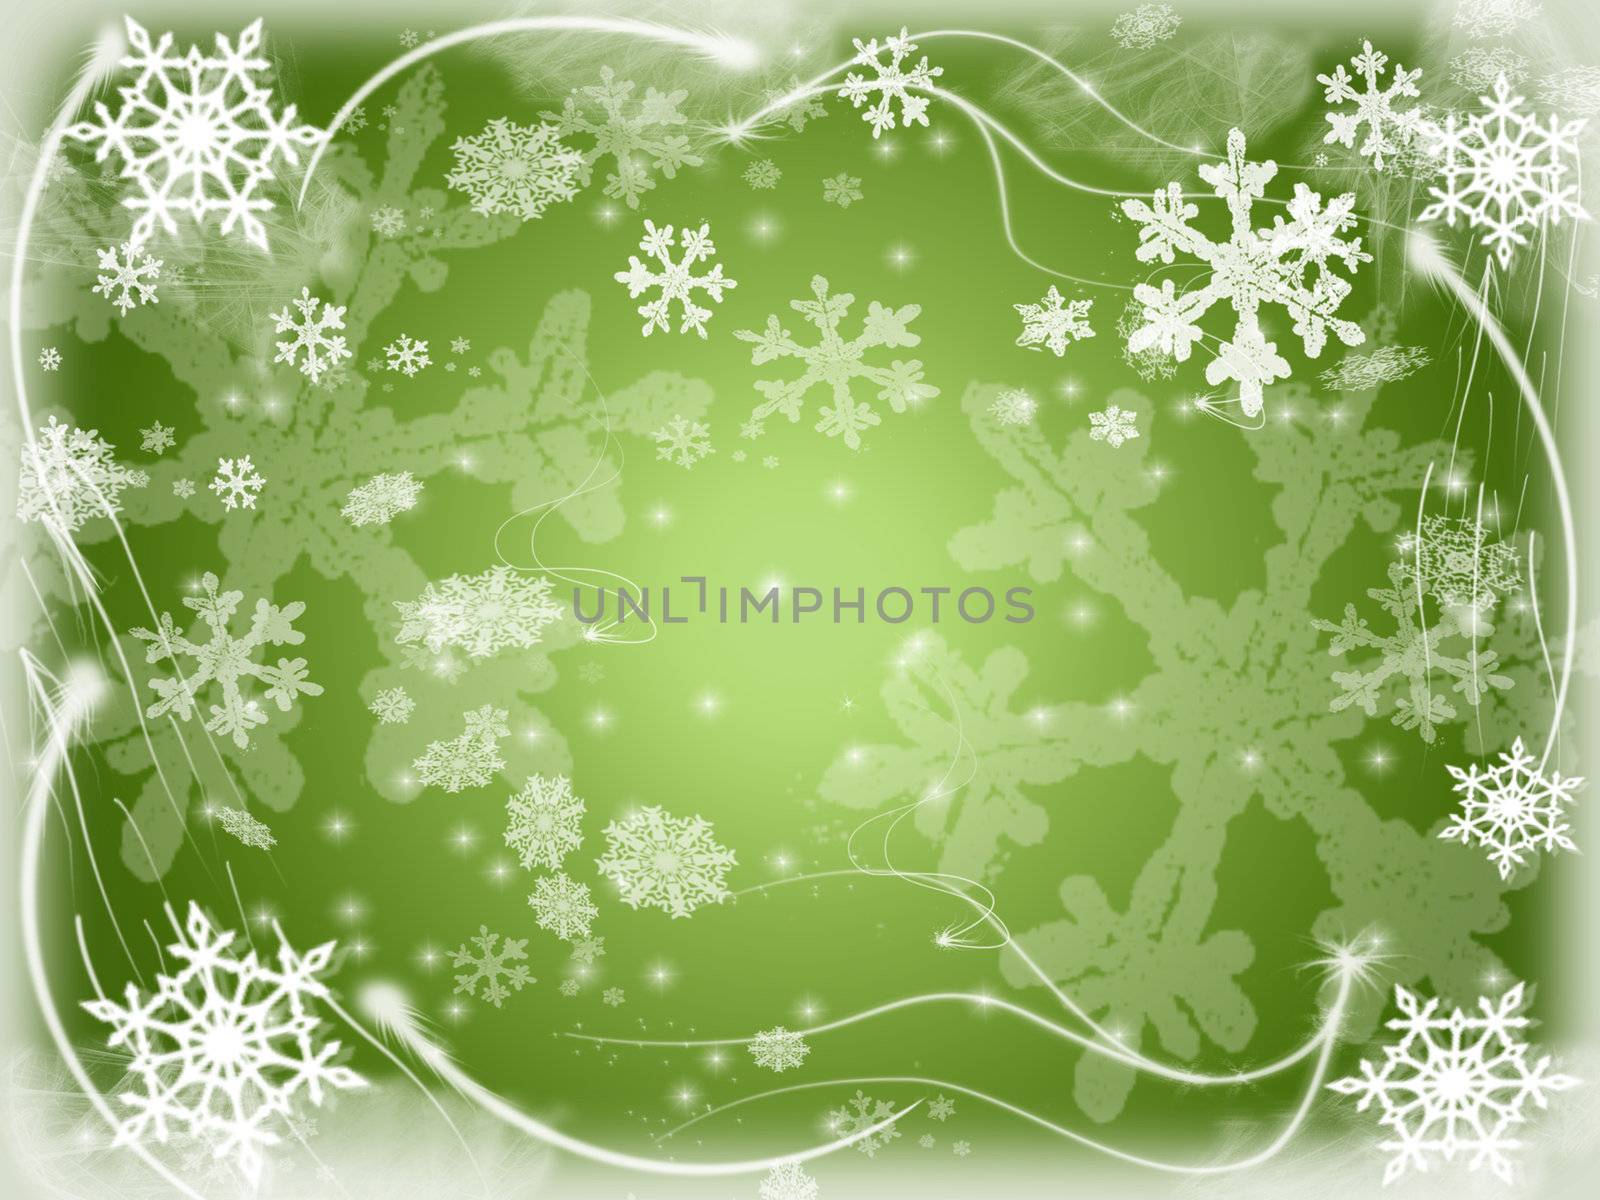 snowflakes 7 by marinini